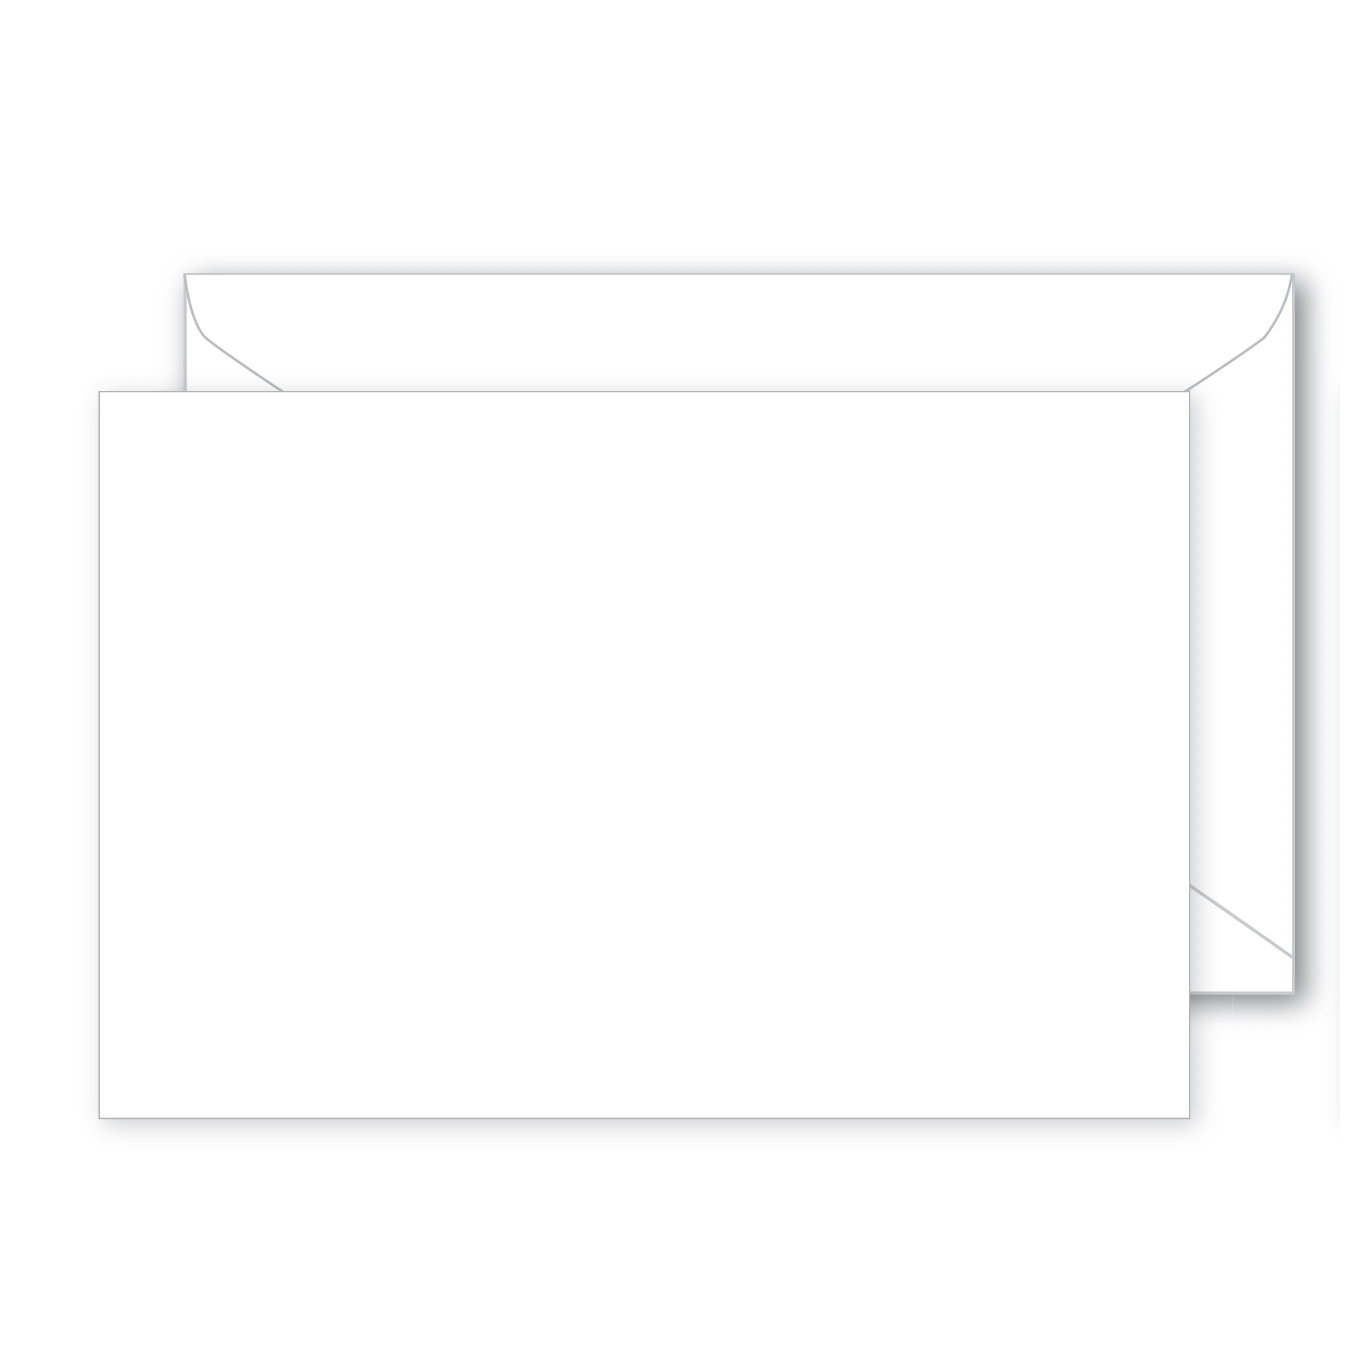 #56 (4.5 X 3 "Large Blank Envelope")